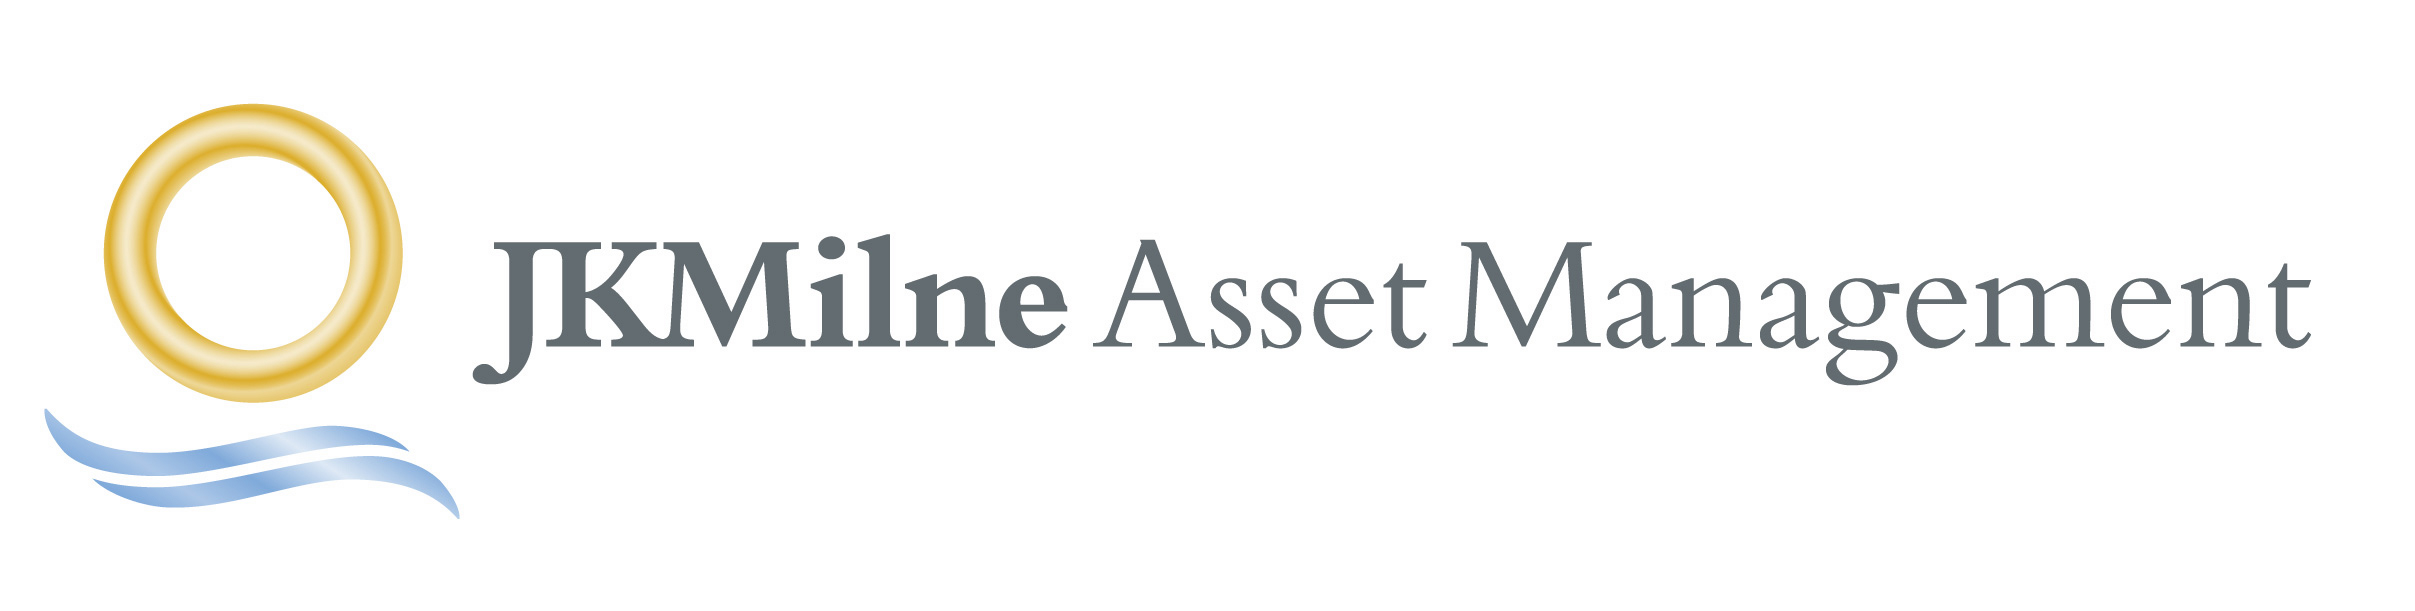 JKMilne Asset Management